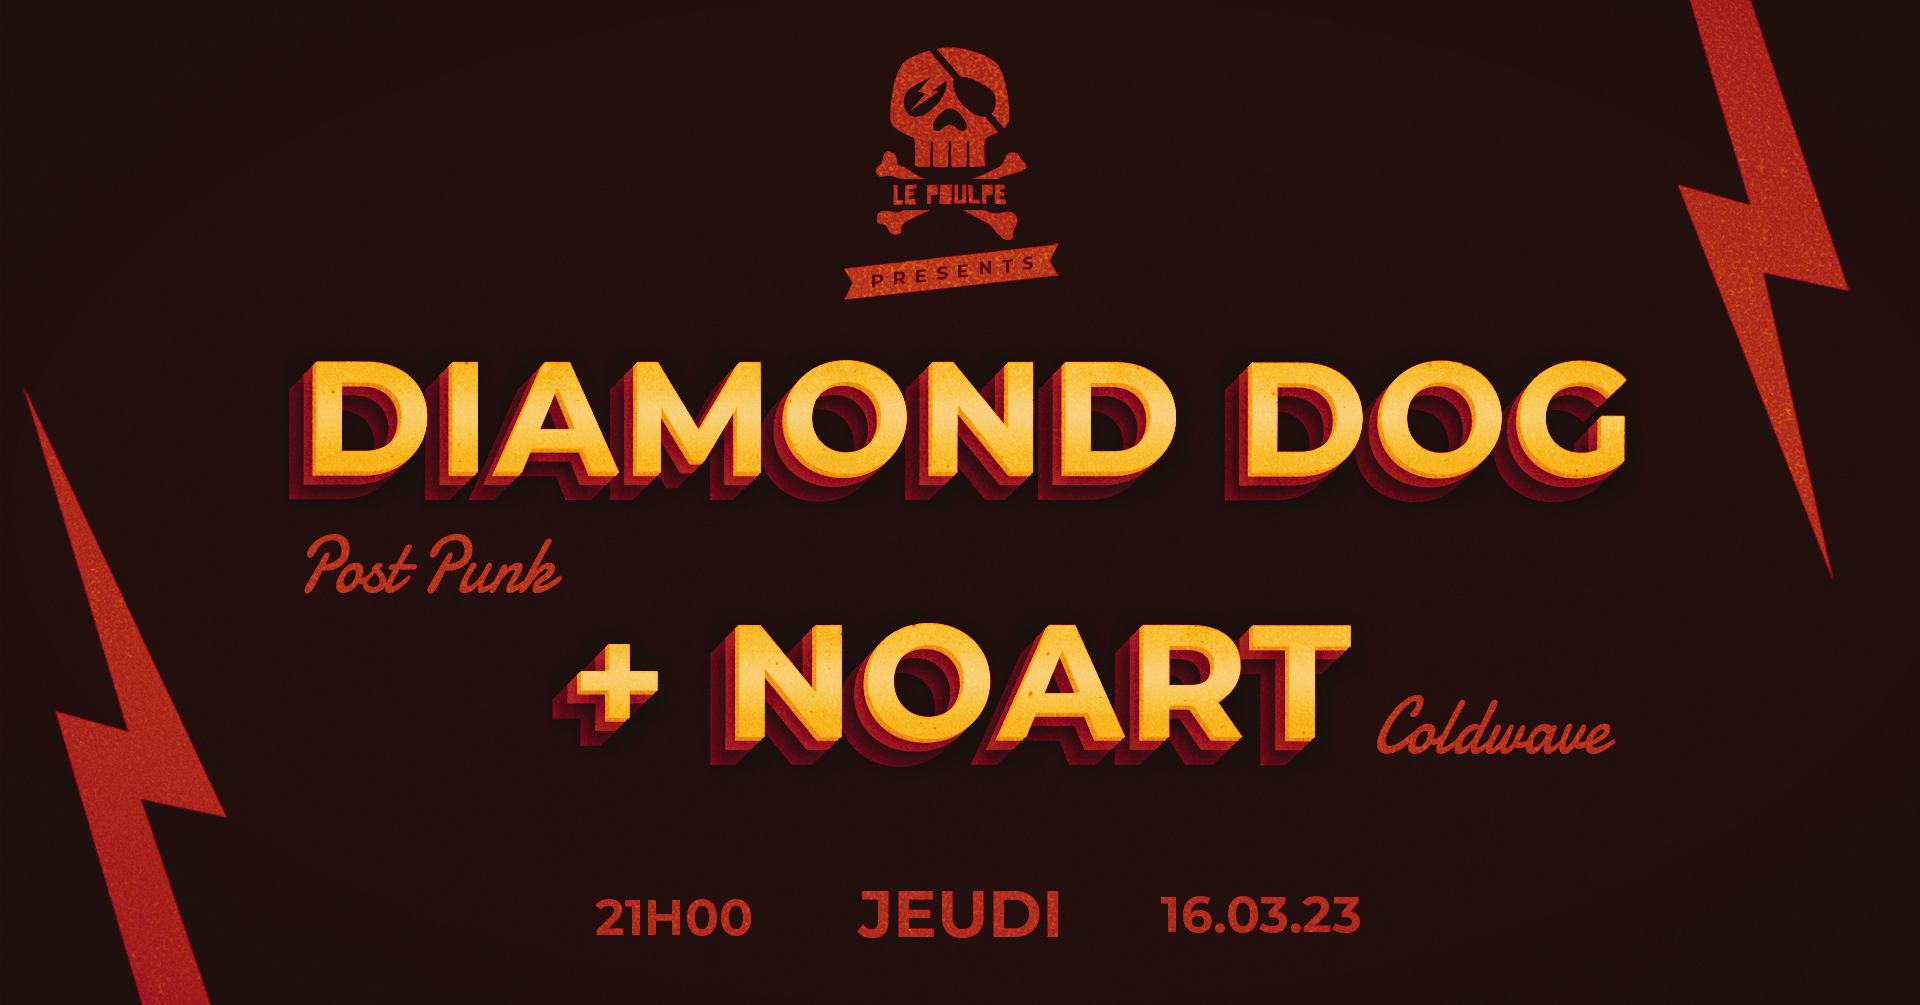 DIAMOND DOG (Post Punk) + NoaRt (Cold Wave Post Punk) @ Le Poulpe